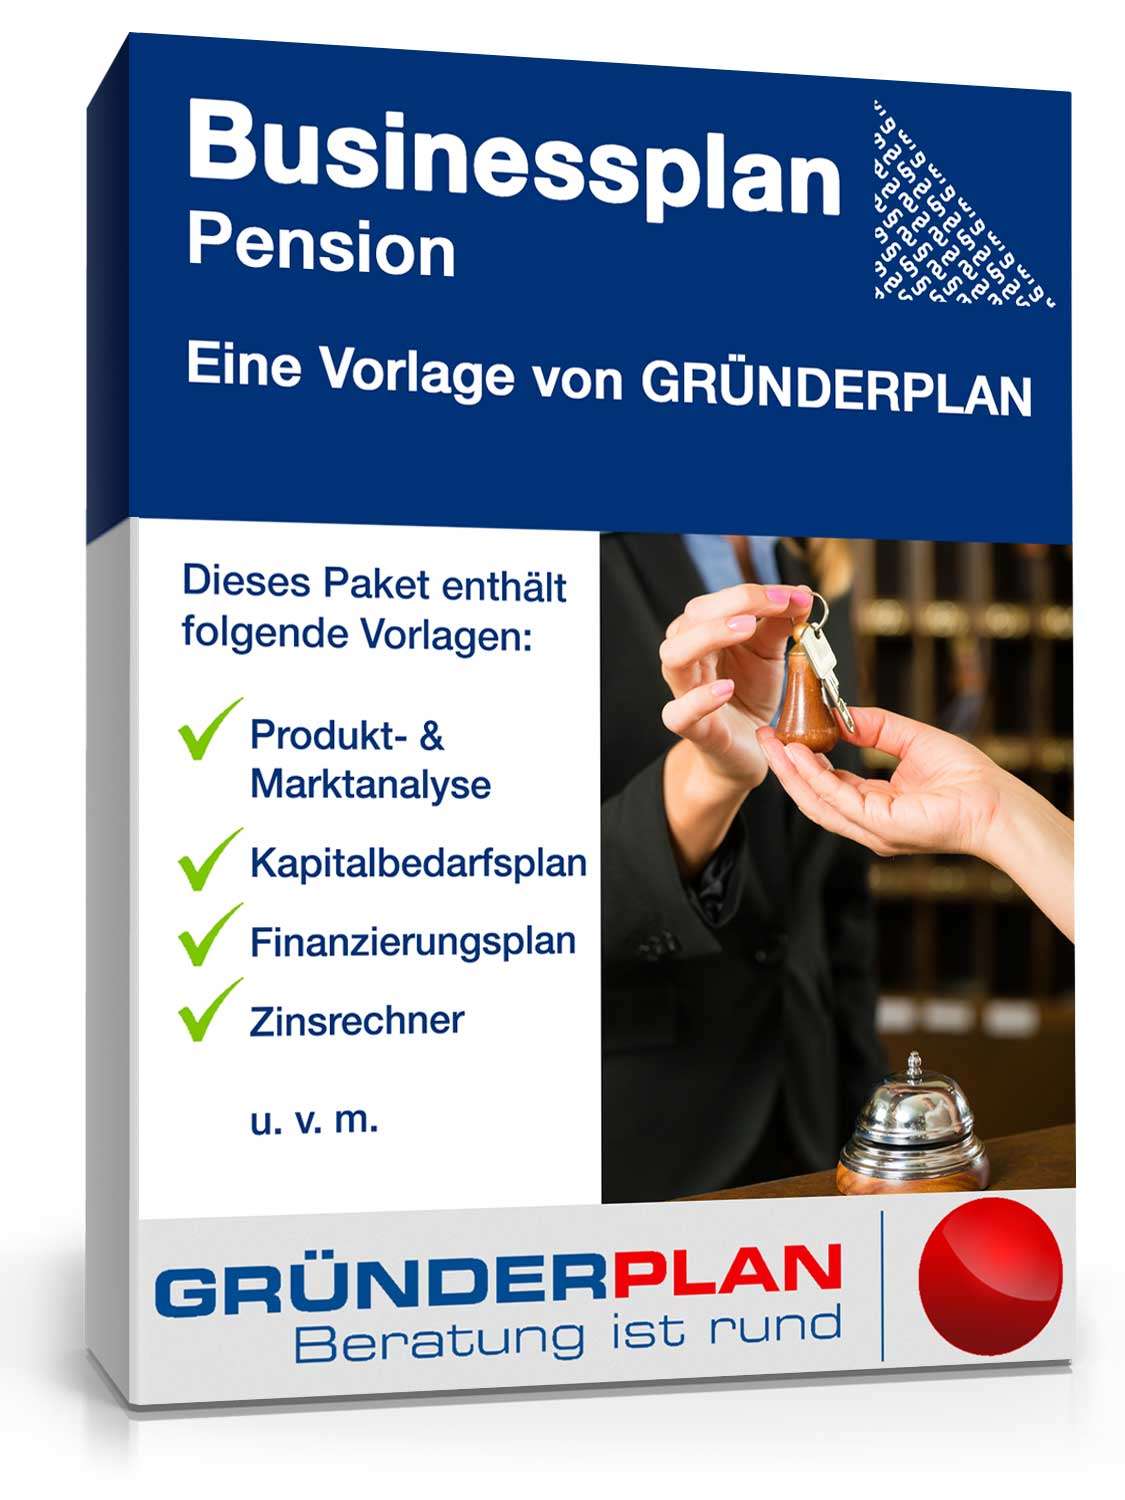 Hauptbild des Produkts: Businessplan Pension von Gründerplan